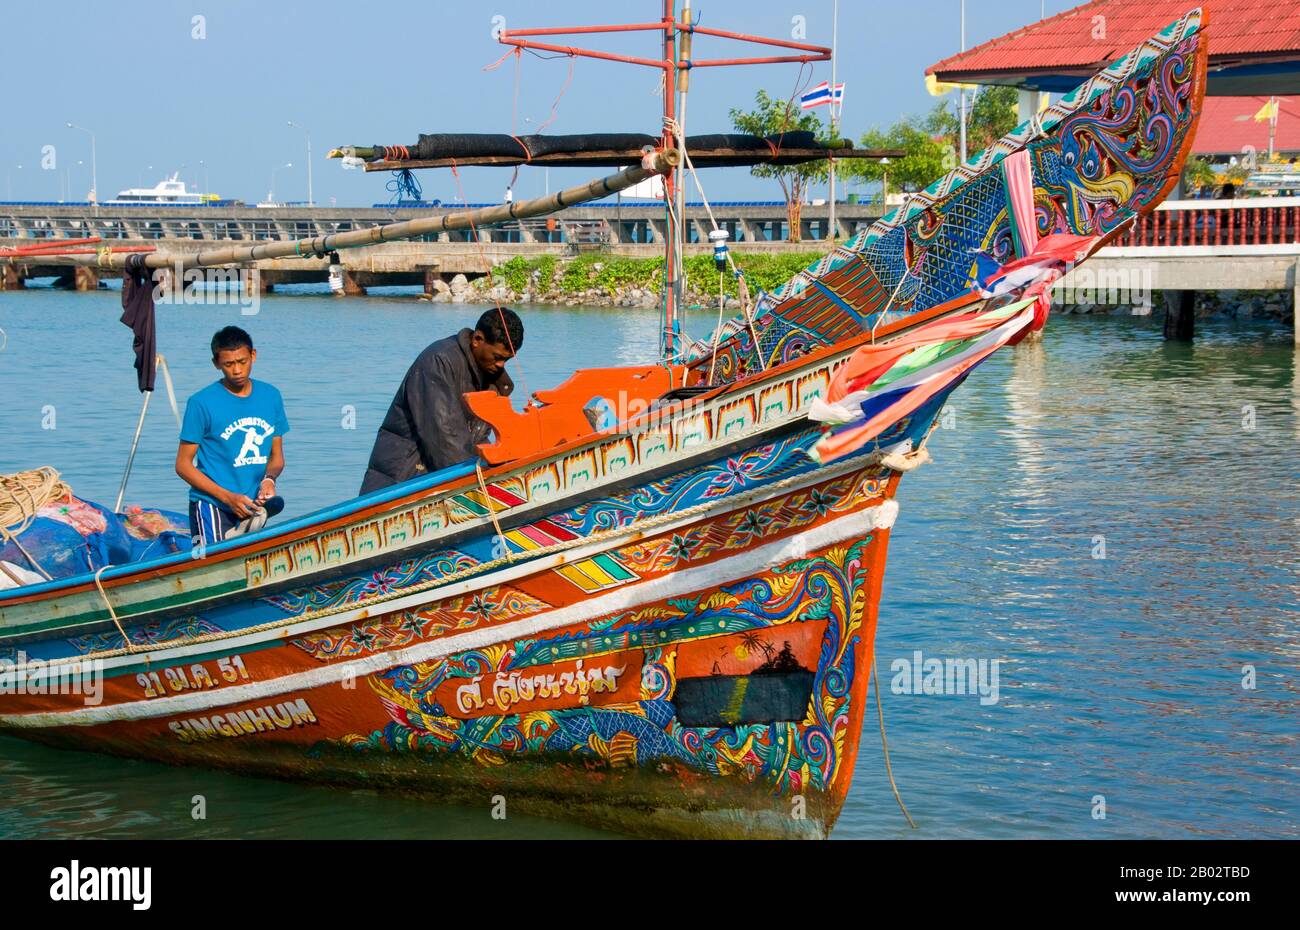 Entlang der Ostküste der Halbinsel Thailand, von Ko Samui südwärts, wurden seit Hunderten von Jahren bunte, bemalte Fischerboote von muslimischen Fischern gebaut und dekoriert. Die besten Beispiele für diese inzwischen rückläufige Industrie stammen aus den Boatyards des Saiburi-Distrikts, Provinz Pattani. Ursprünglich werden Korlae heute von einheimischen Fischern mit Motoren geführt. Zu den Zeichen, die auf den hervorragend detaillierten Rumpeldesigns häufig dargestellt werden, gehören der singha-löwe, der gagasura-Hornvogel, die payanak-Seeschlange und der Garuda-Vogel, der sowohl das Symbol des thailändischen Königreichs als auch des Mythi ist Stockfoto